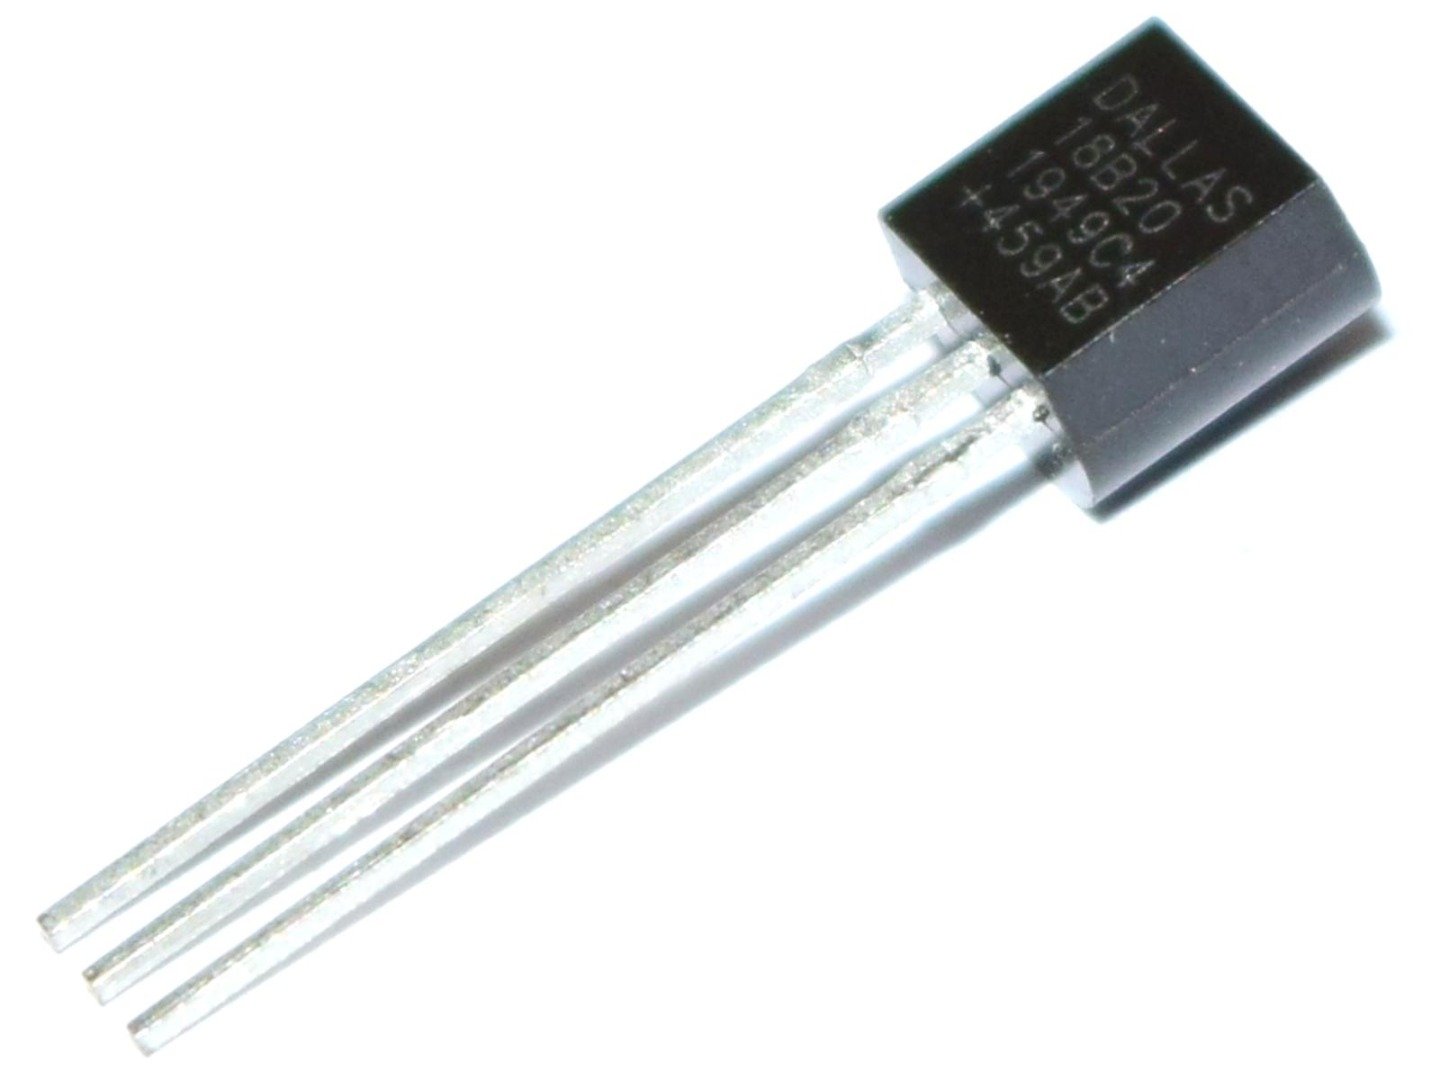 Maxim DALLAS DS18B20+ Digital Temperature Sensor – 3 to 5.5V 4